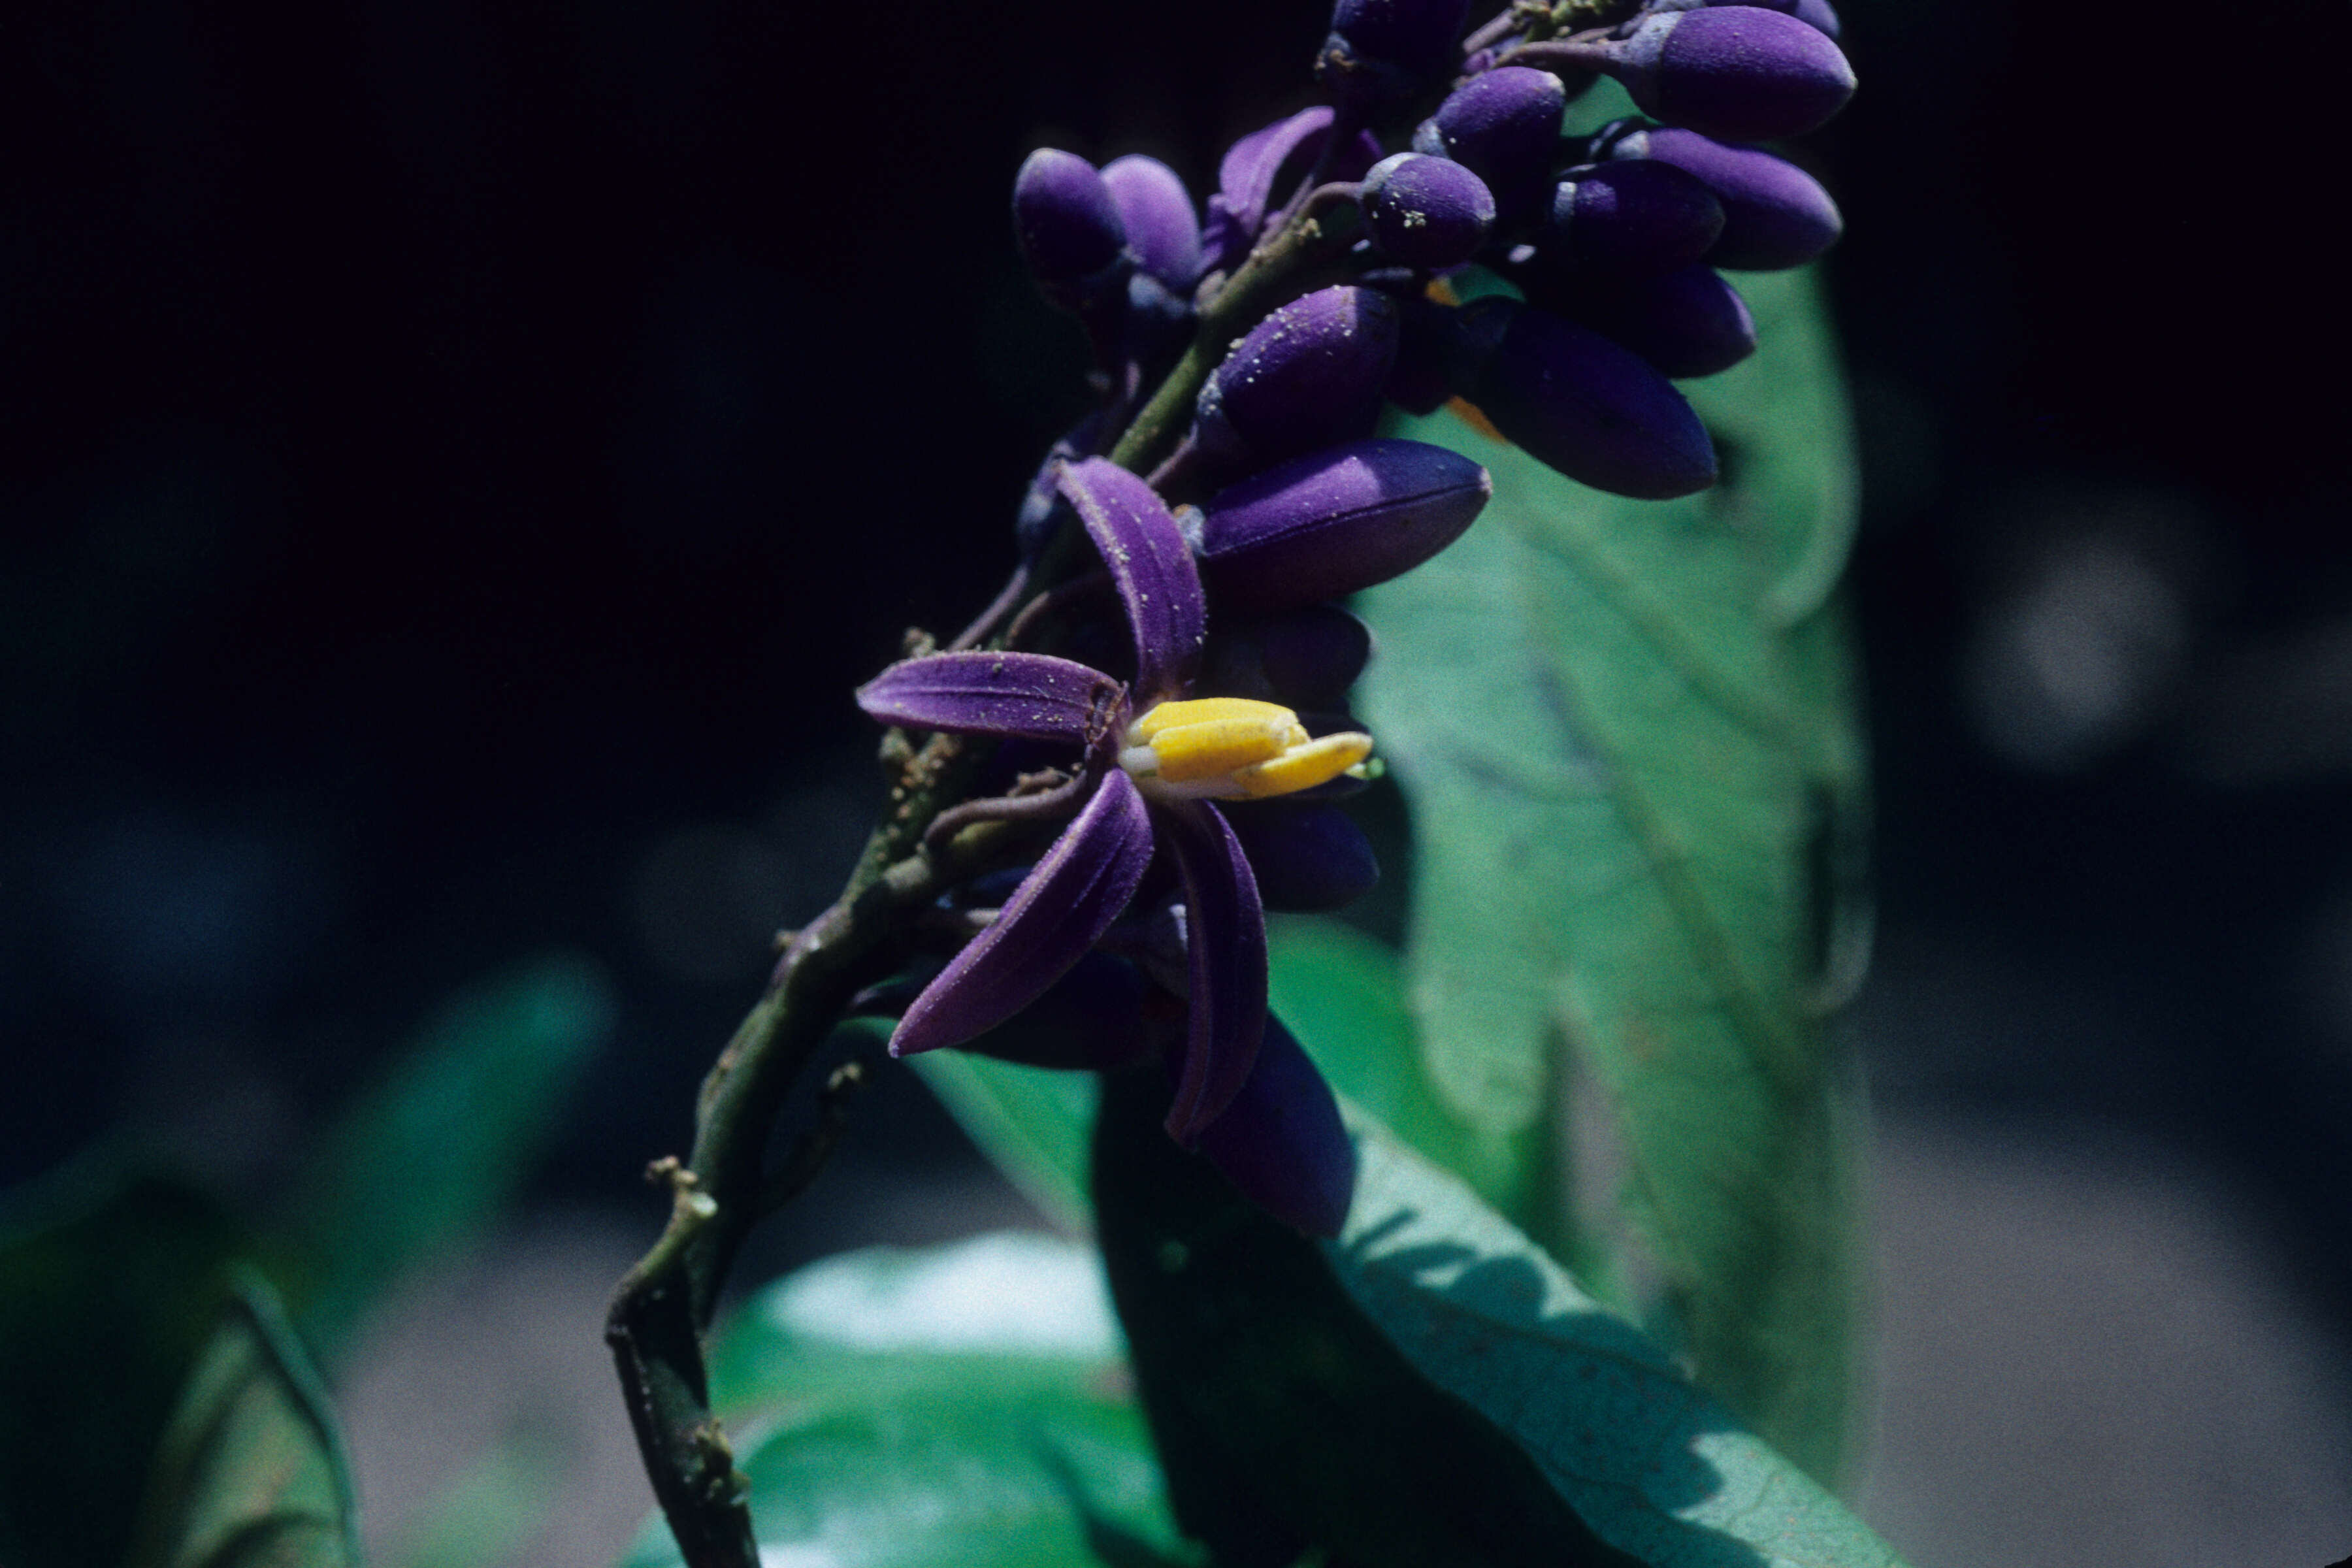 Image of Solanum uncinellum Lindl.